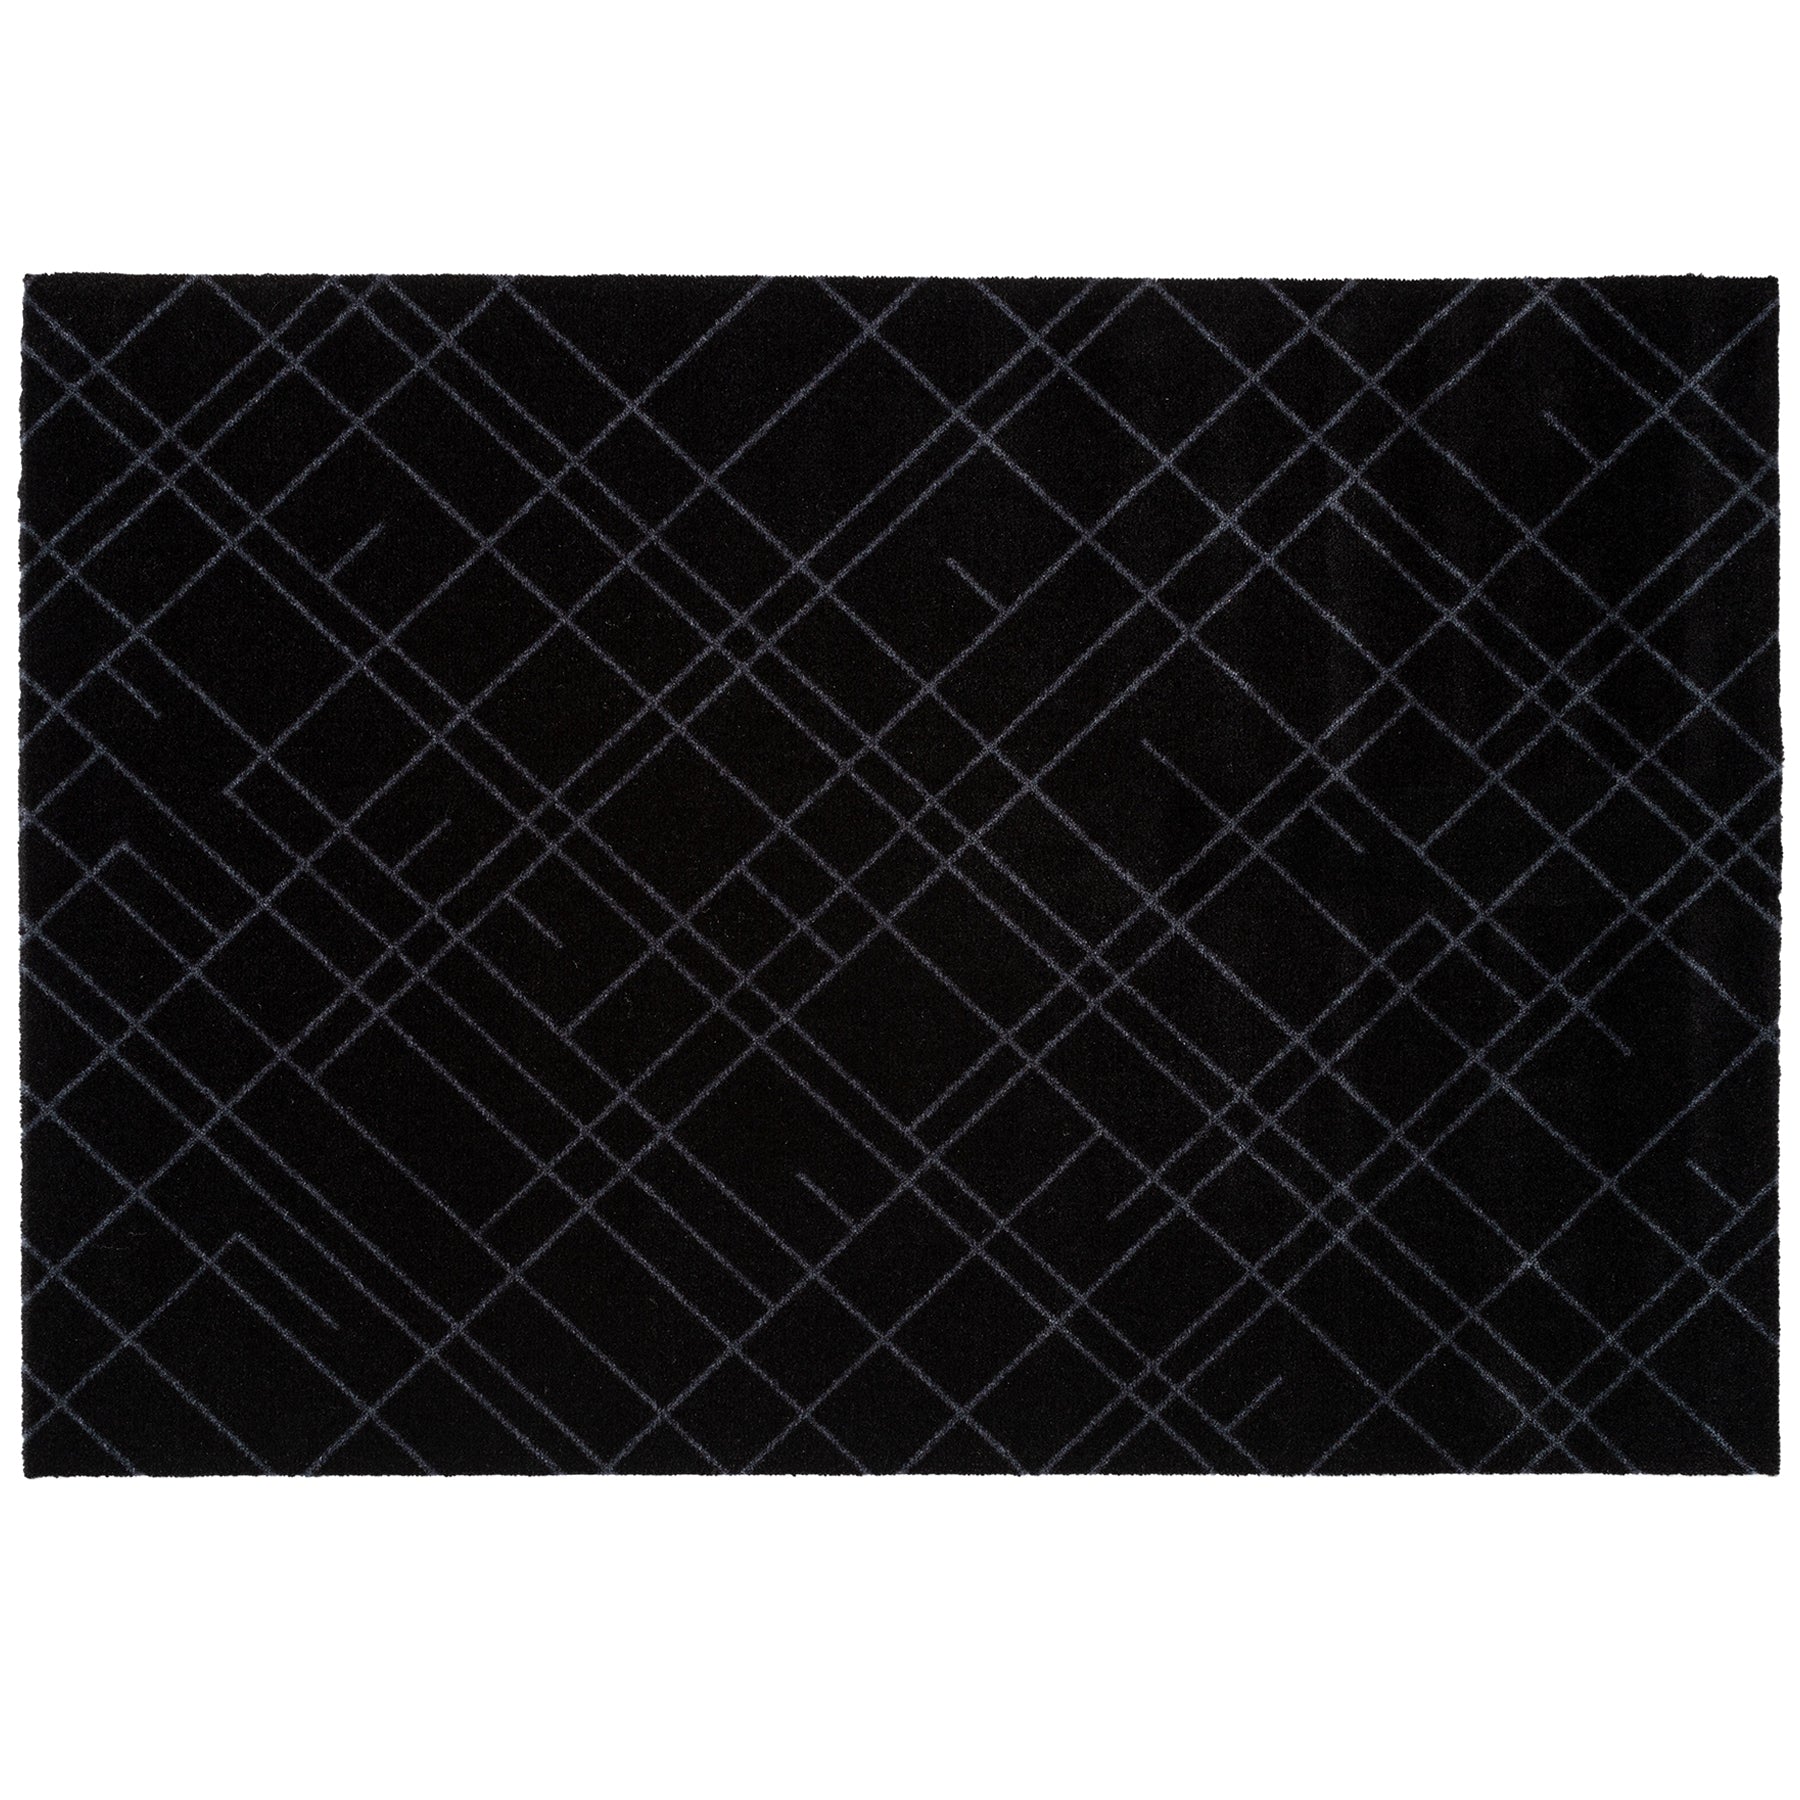 Mate de piso 90 x 130 cm - linhas/cinza preto